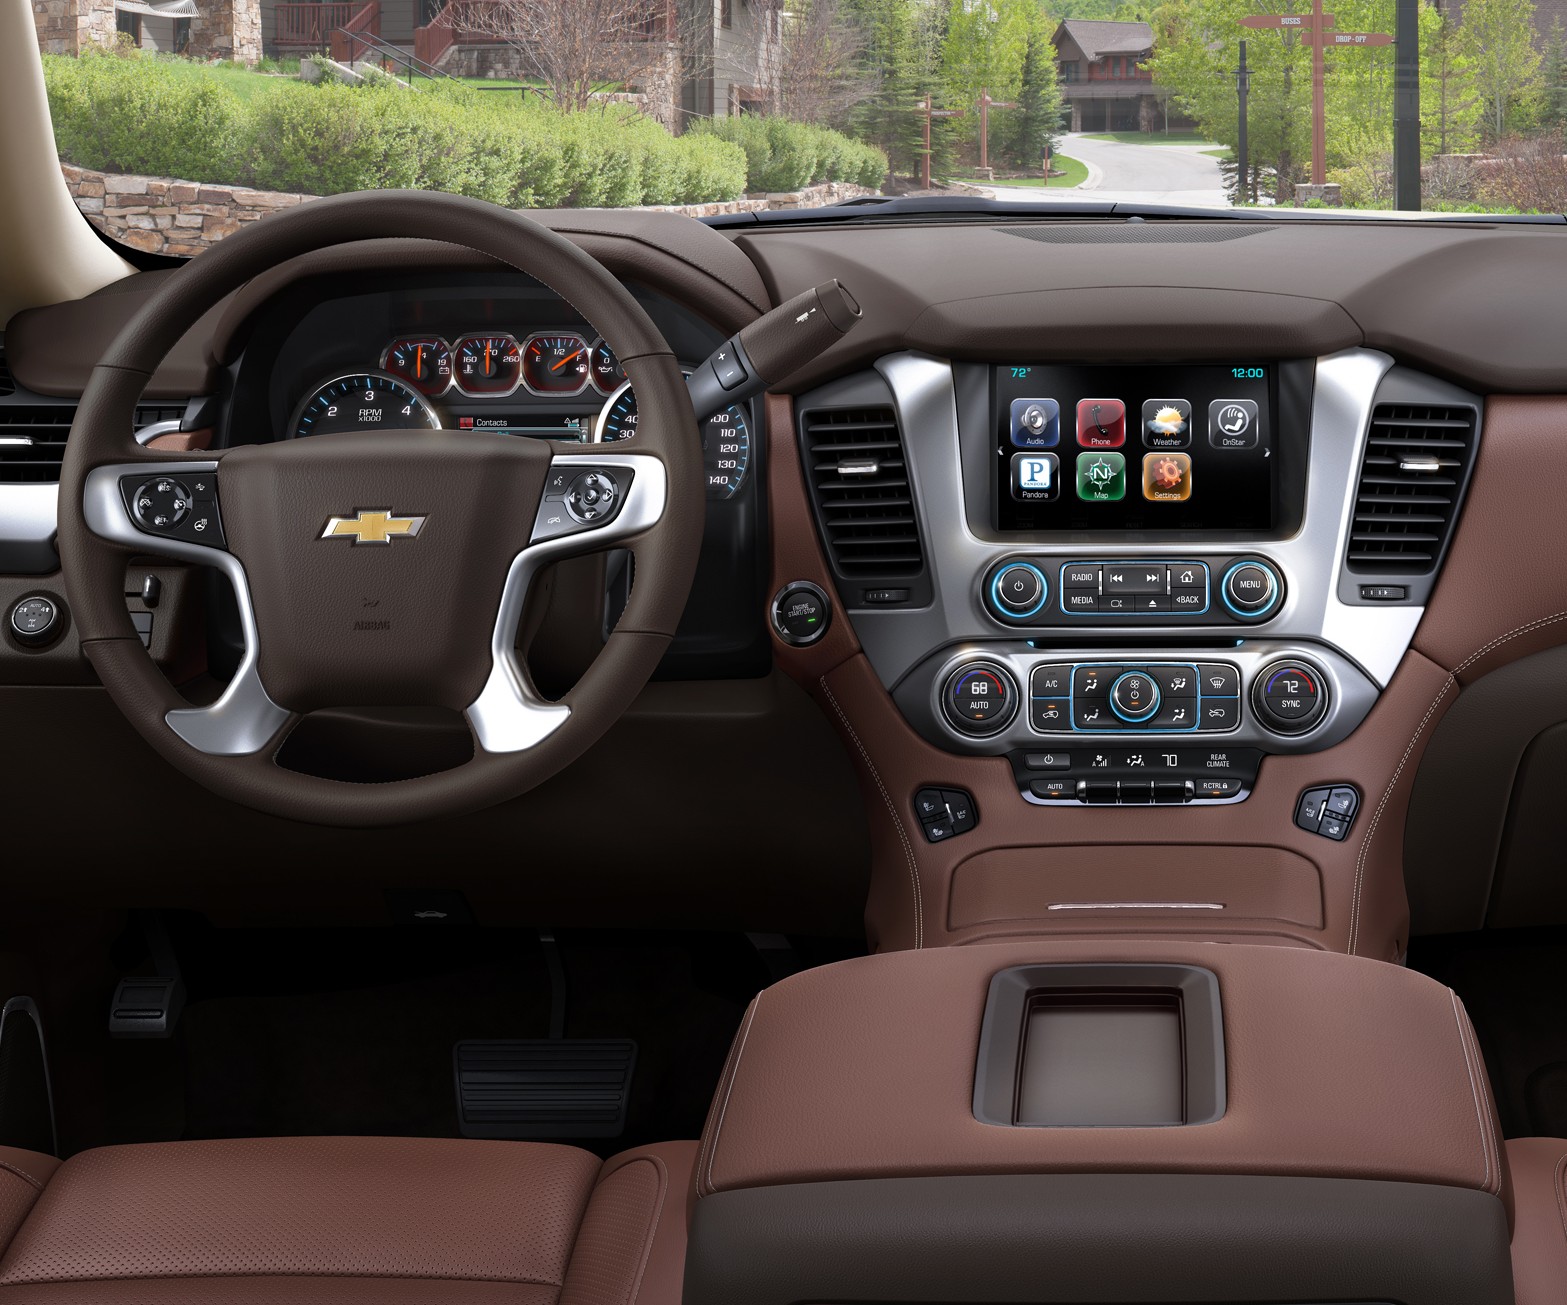 2015 Chevrolet Suburban Center Console